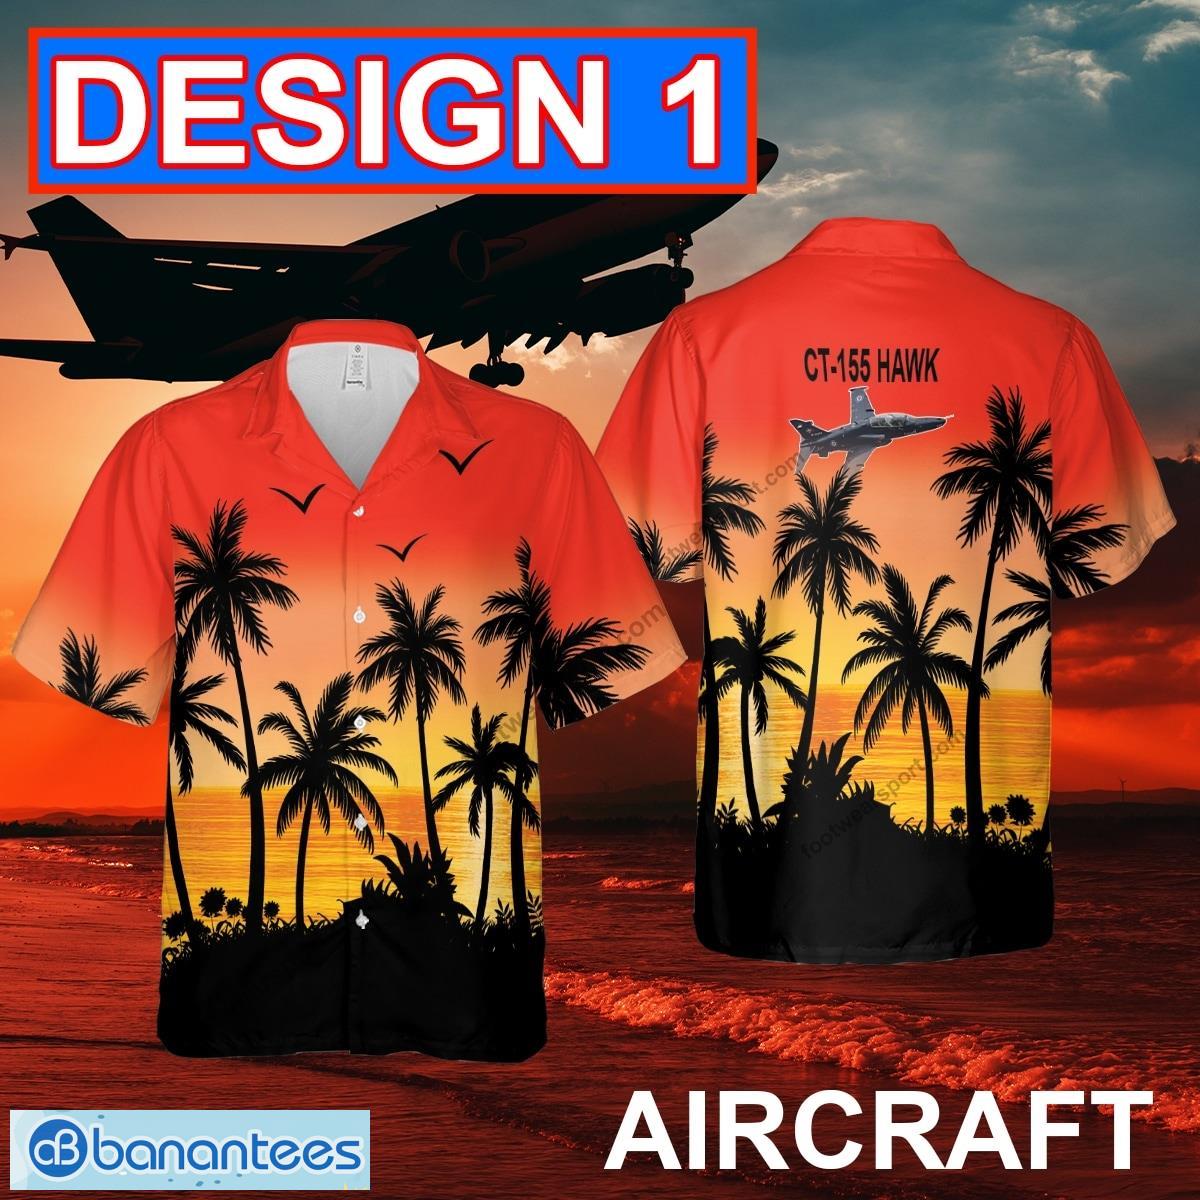 CT-155 Hawk CT155 Aircraft Hawaiian Shirt Red Color All Over Print Special Gifts - CT-155 Hawk CT155 Aircraft Hawaiian Shirt Multi Design 1